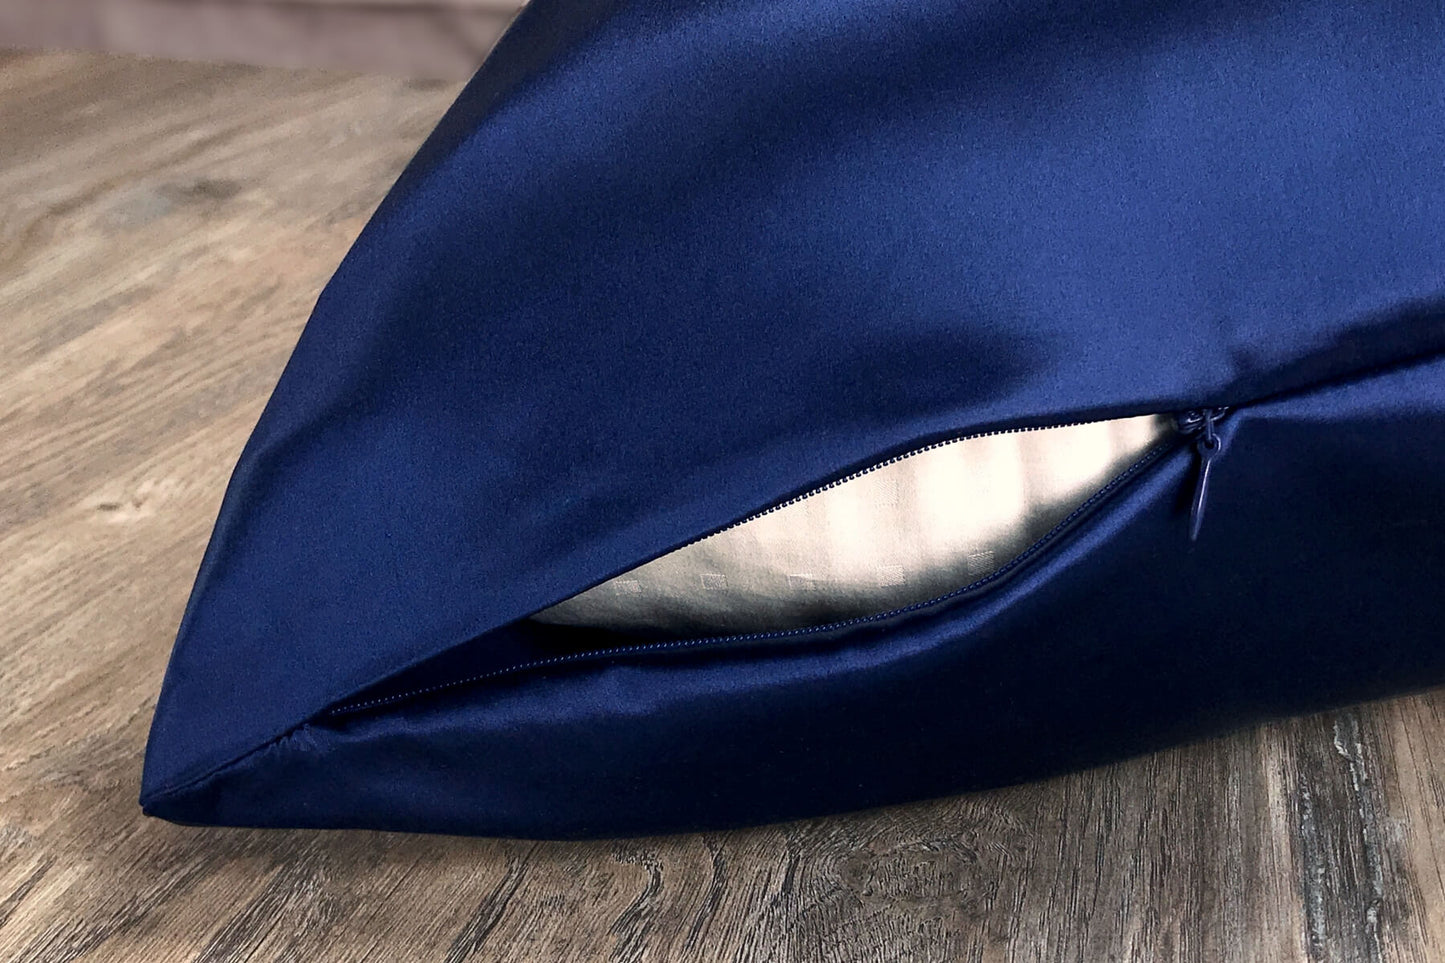 Celestial Silk navy blue silk pillowcase with hidden zipper